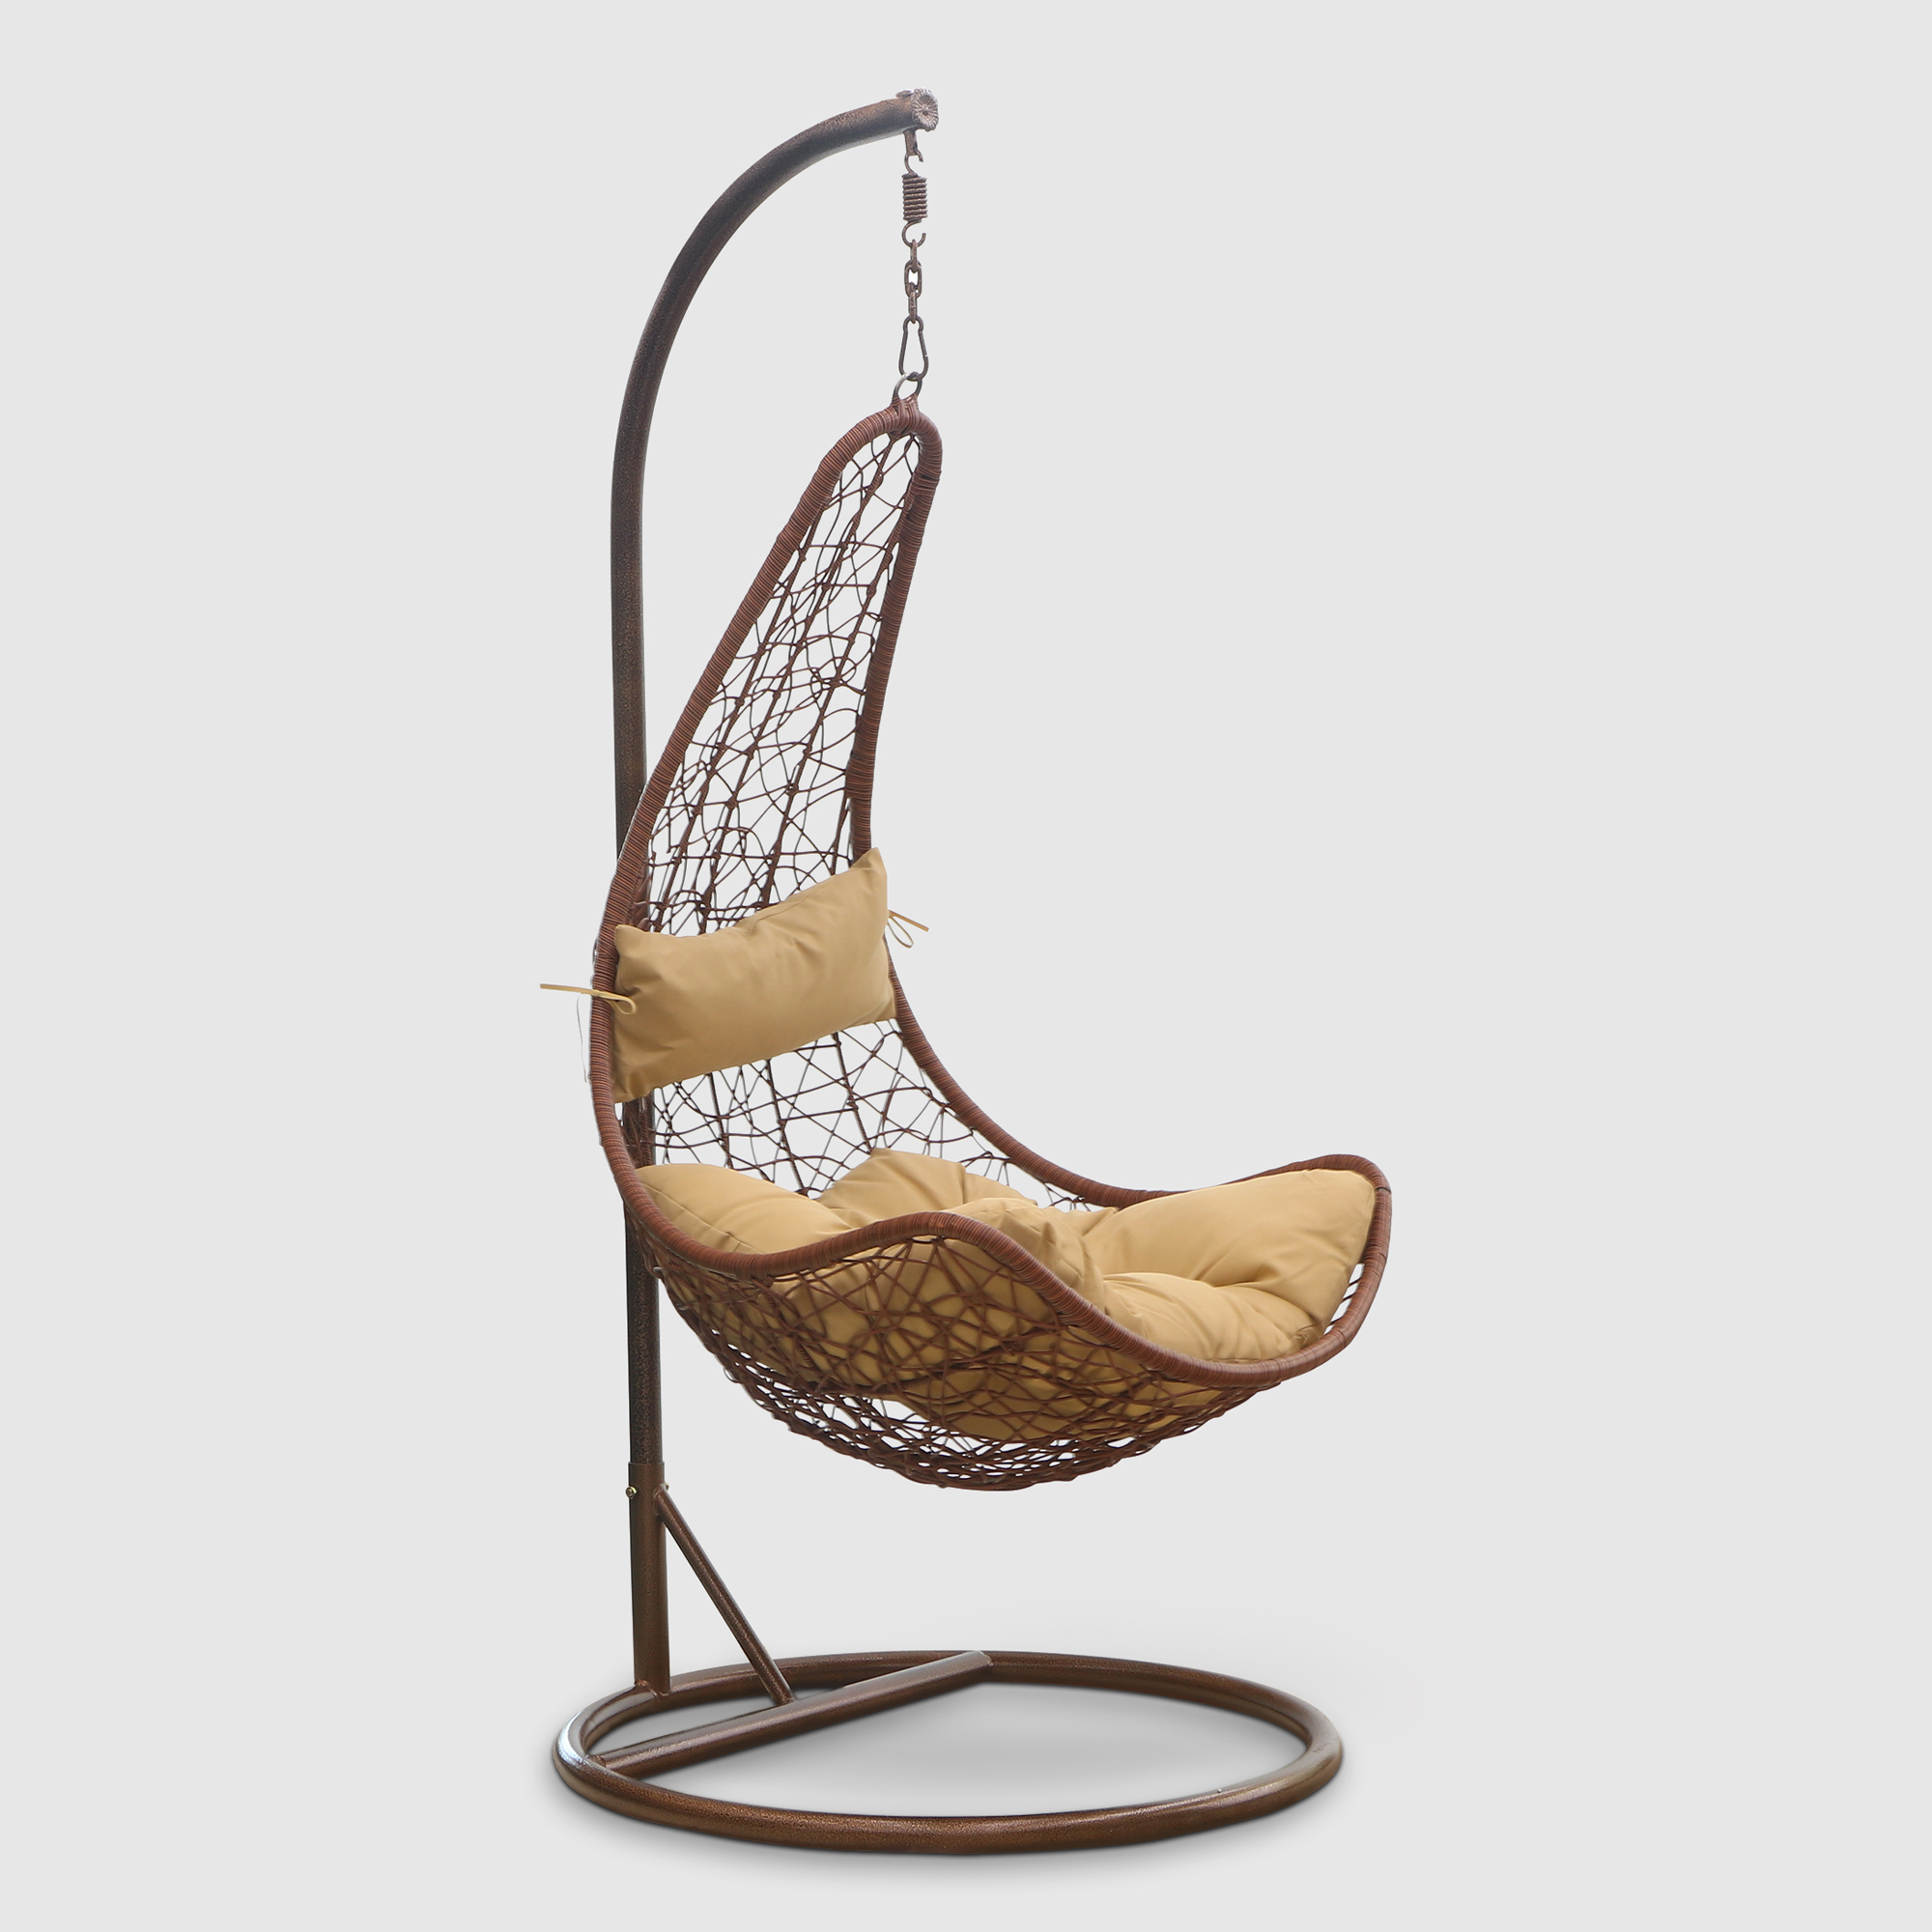 Кресло подвесное Art and craft furniture коричневое, цвет коричневый - фото 1